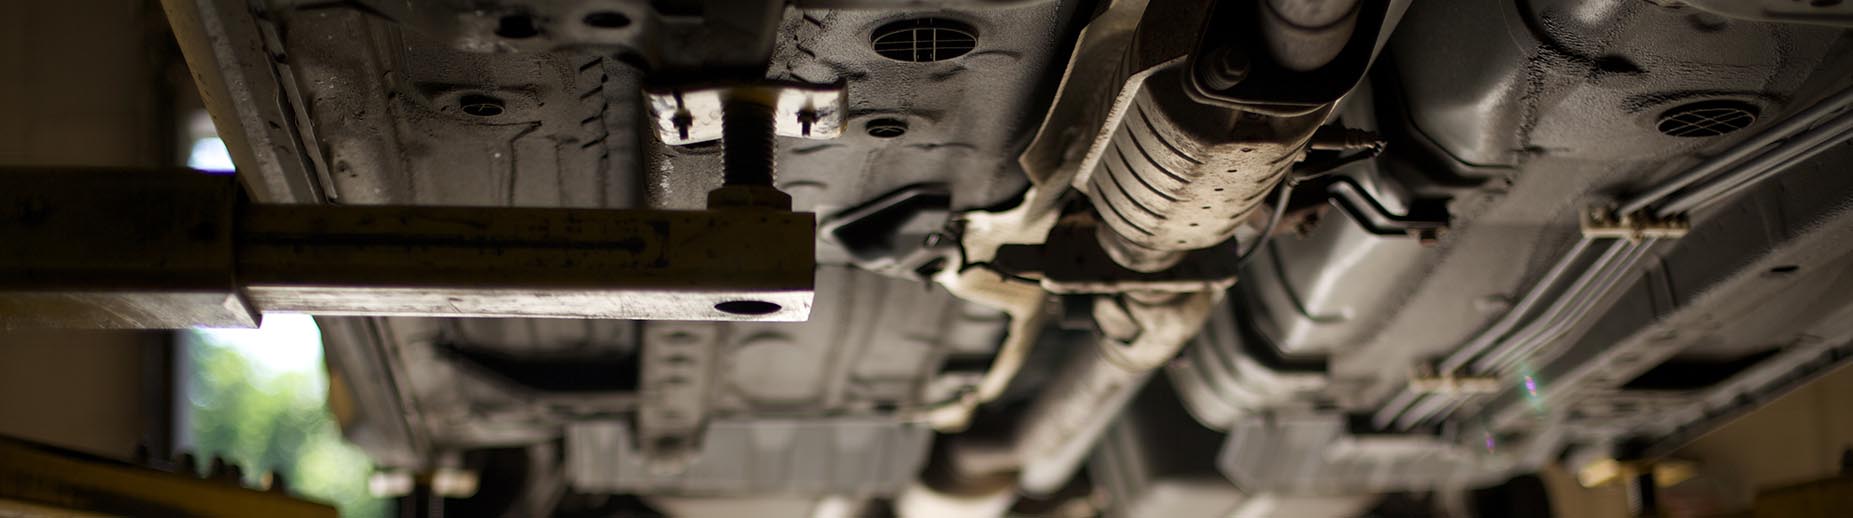 Petaluma Catalytic Converter Services, Exhaust Repair and Auto Repair